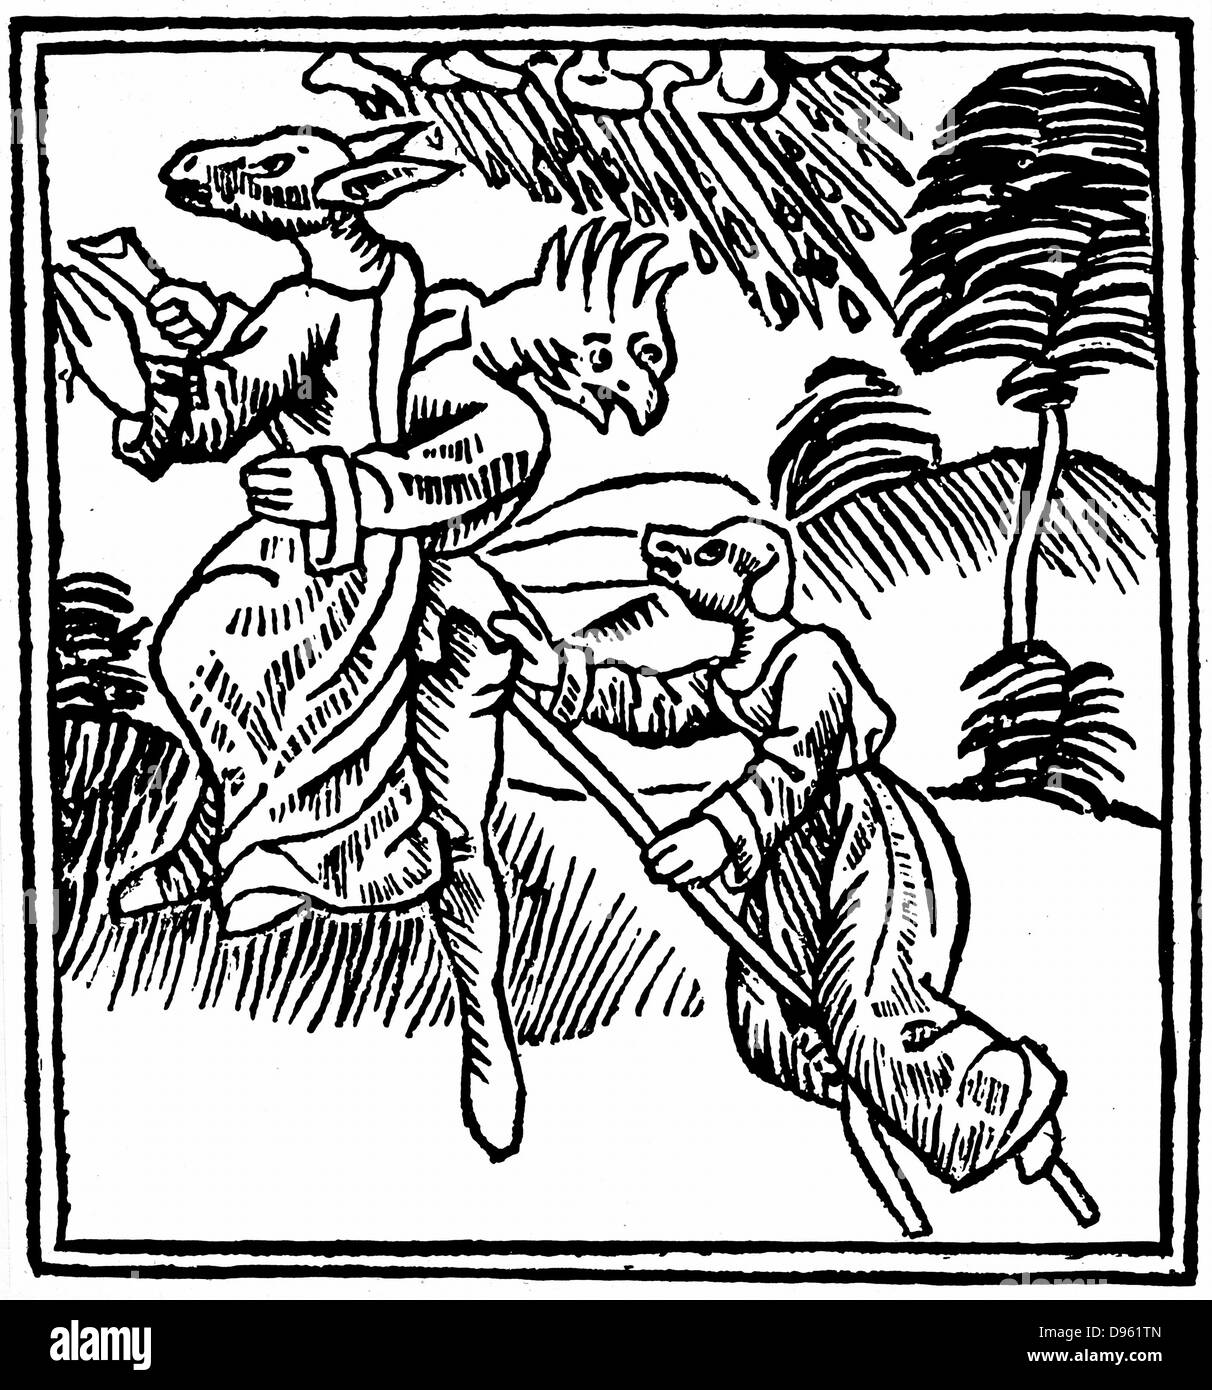 Les sorcières transformées en animaux comme ils montent dans l'air sur un bâton. Ulrich de 'De Laniis Militor et phitonicis mulieribus', Constance, 1489. Gravure sur bois. Banque D'Images